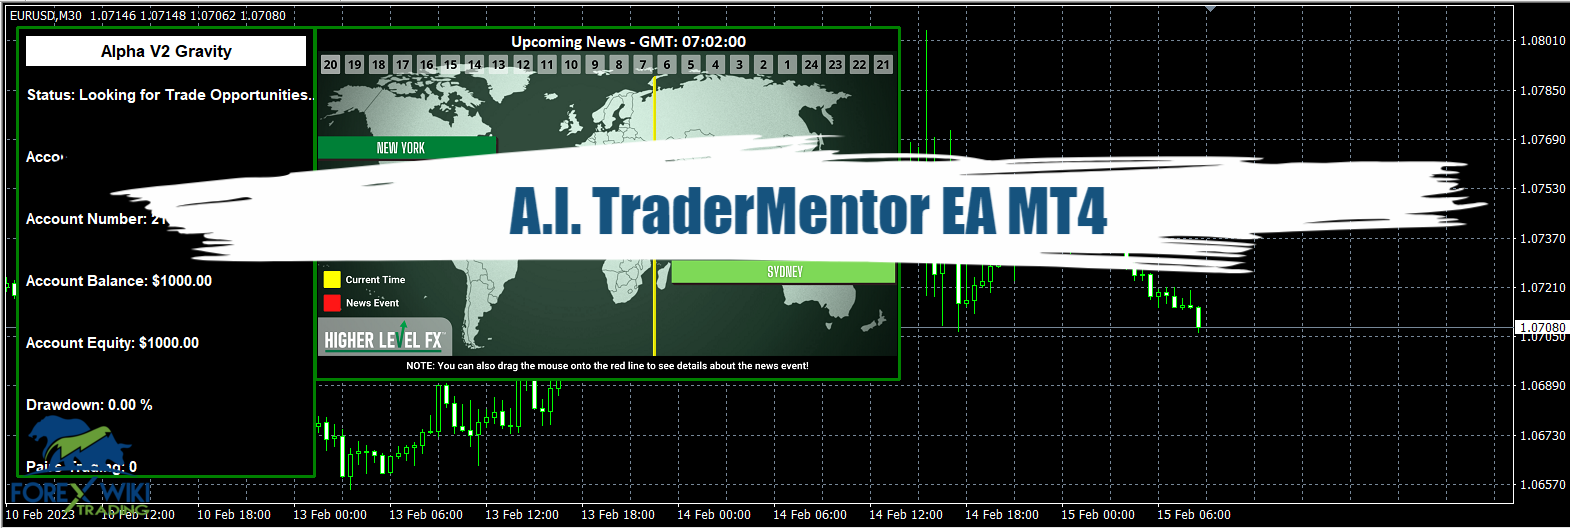 A.I. TraderMentor EA MT4 - Free Download 23